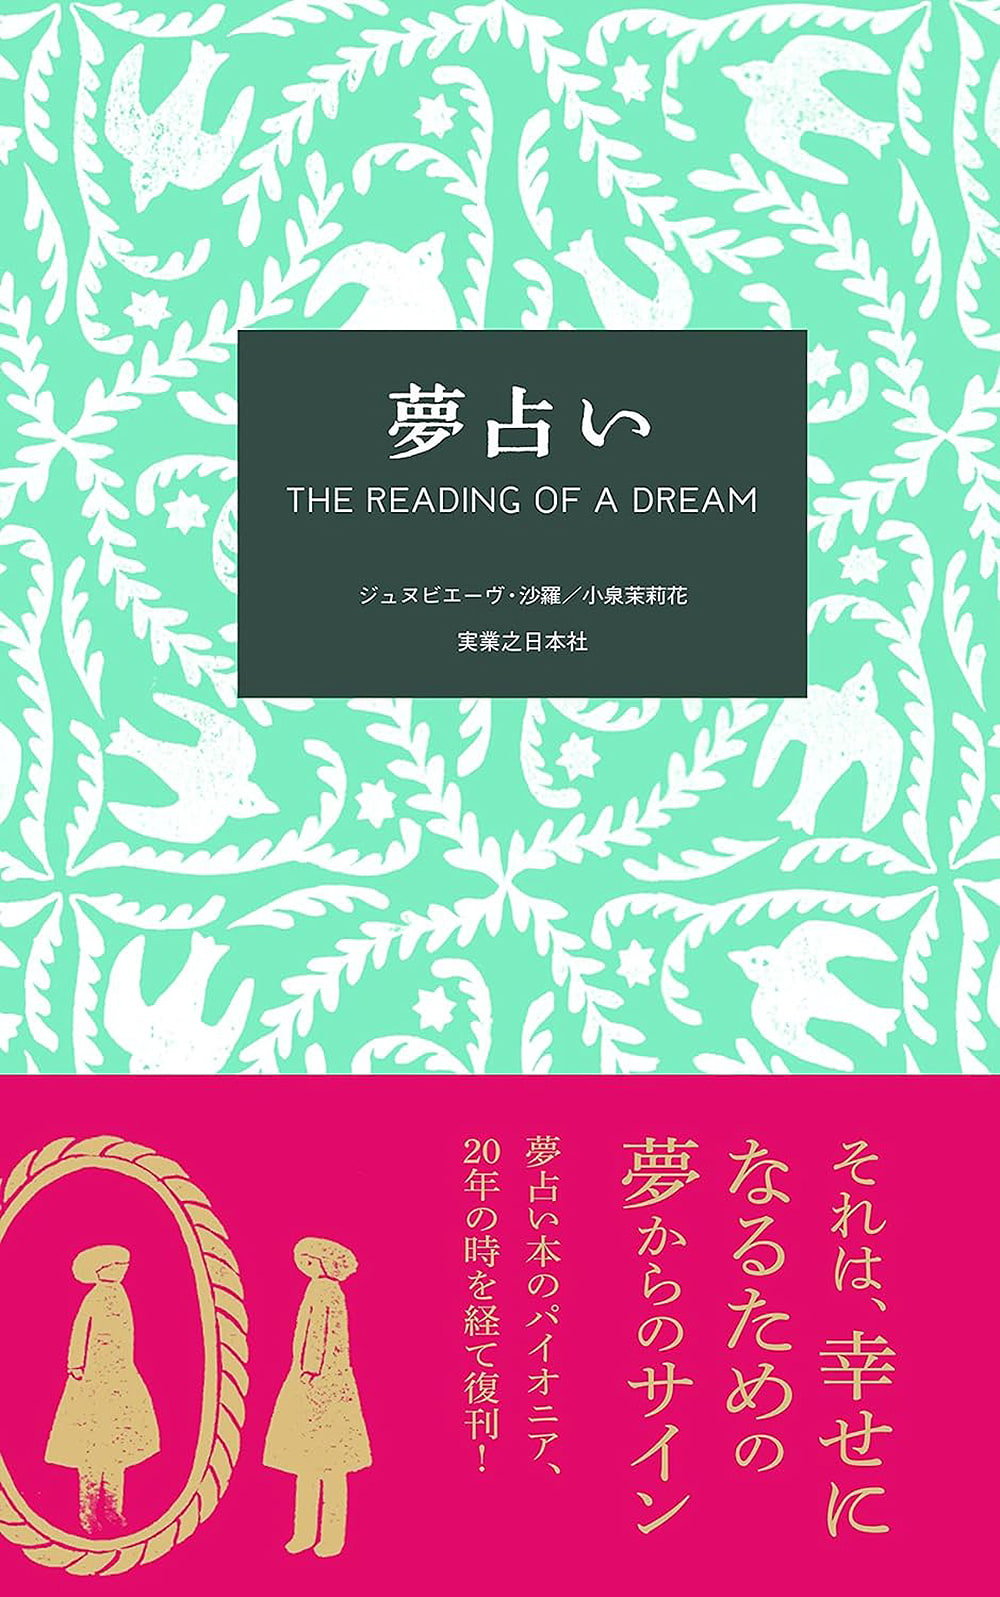 夢占い Dream divination / オラクルカード カード占い タロット 実業之日本社 ルノルマン スピリチュアル インド占星術 宗教用品